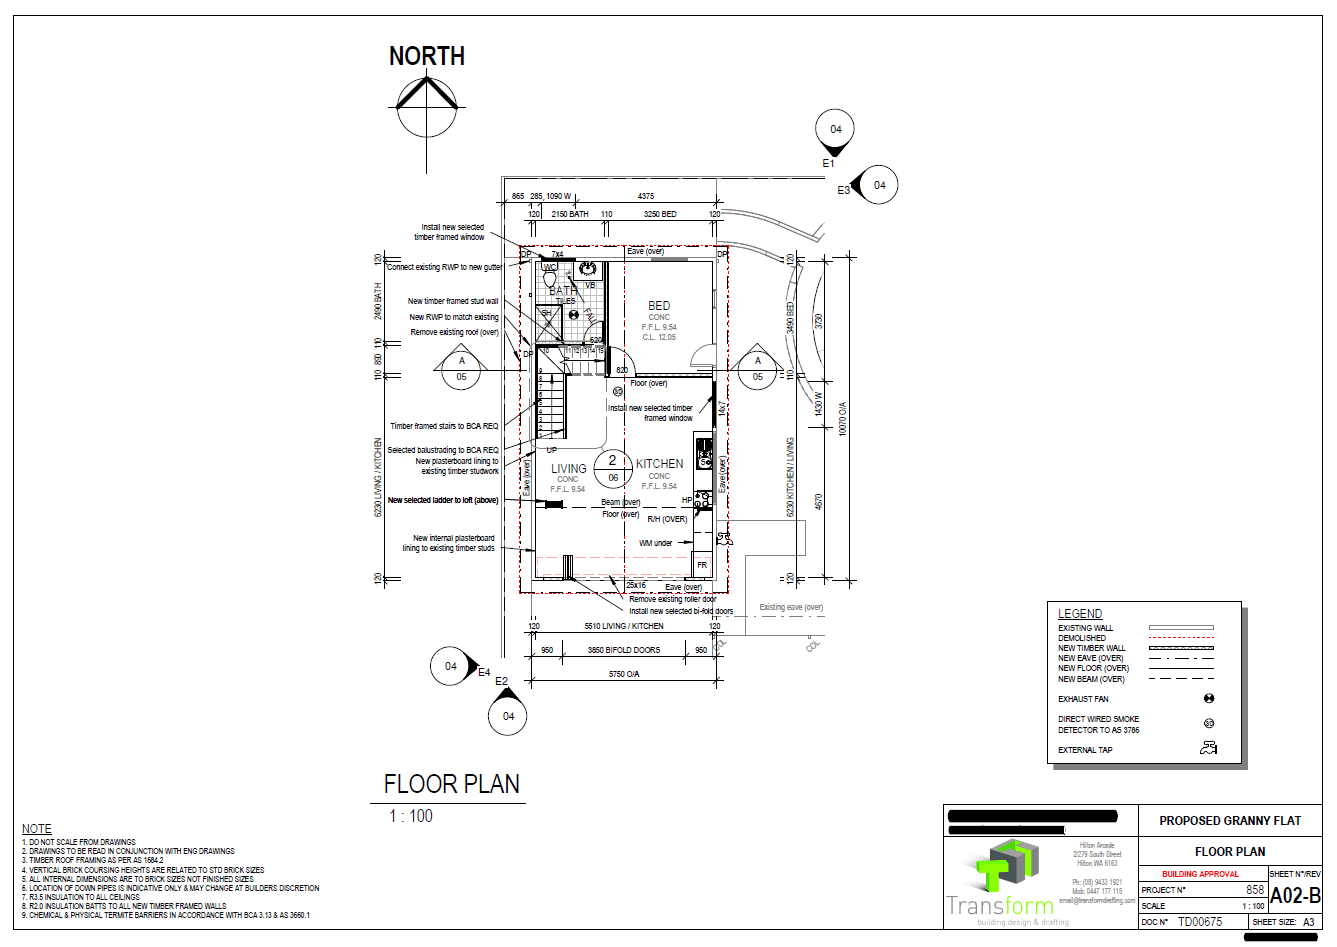 3. Ground Floor Plan